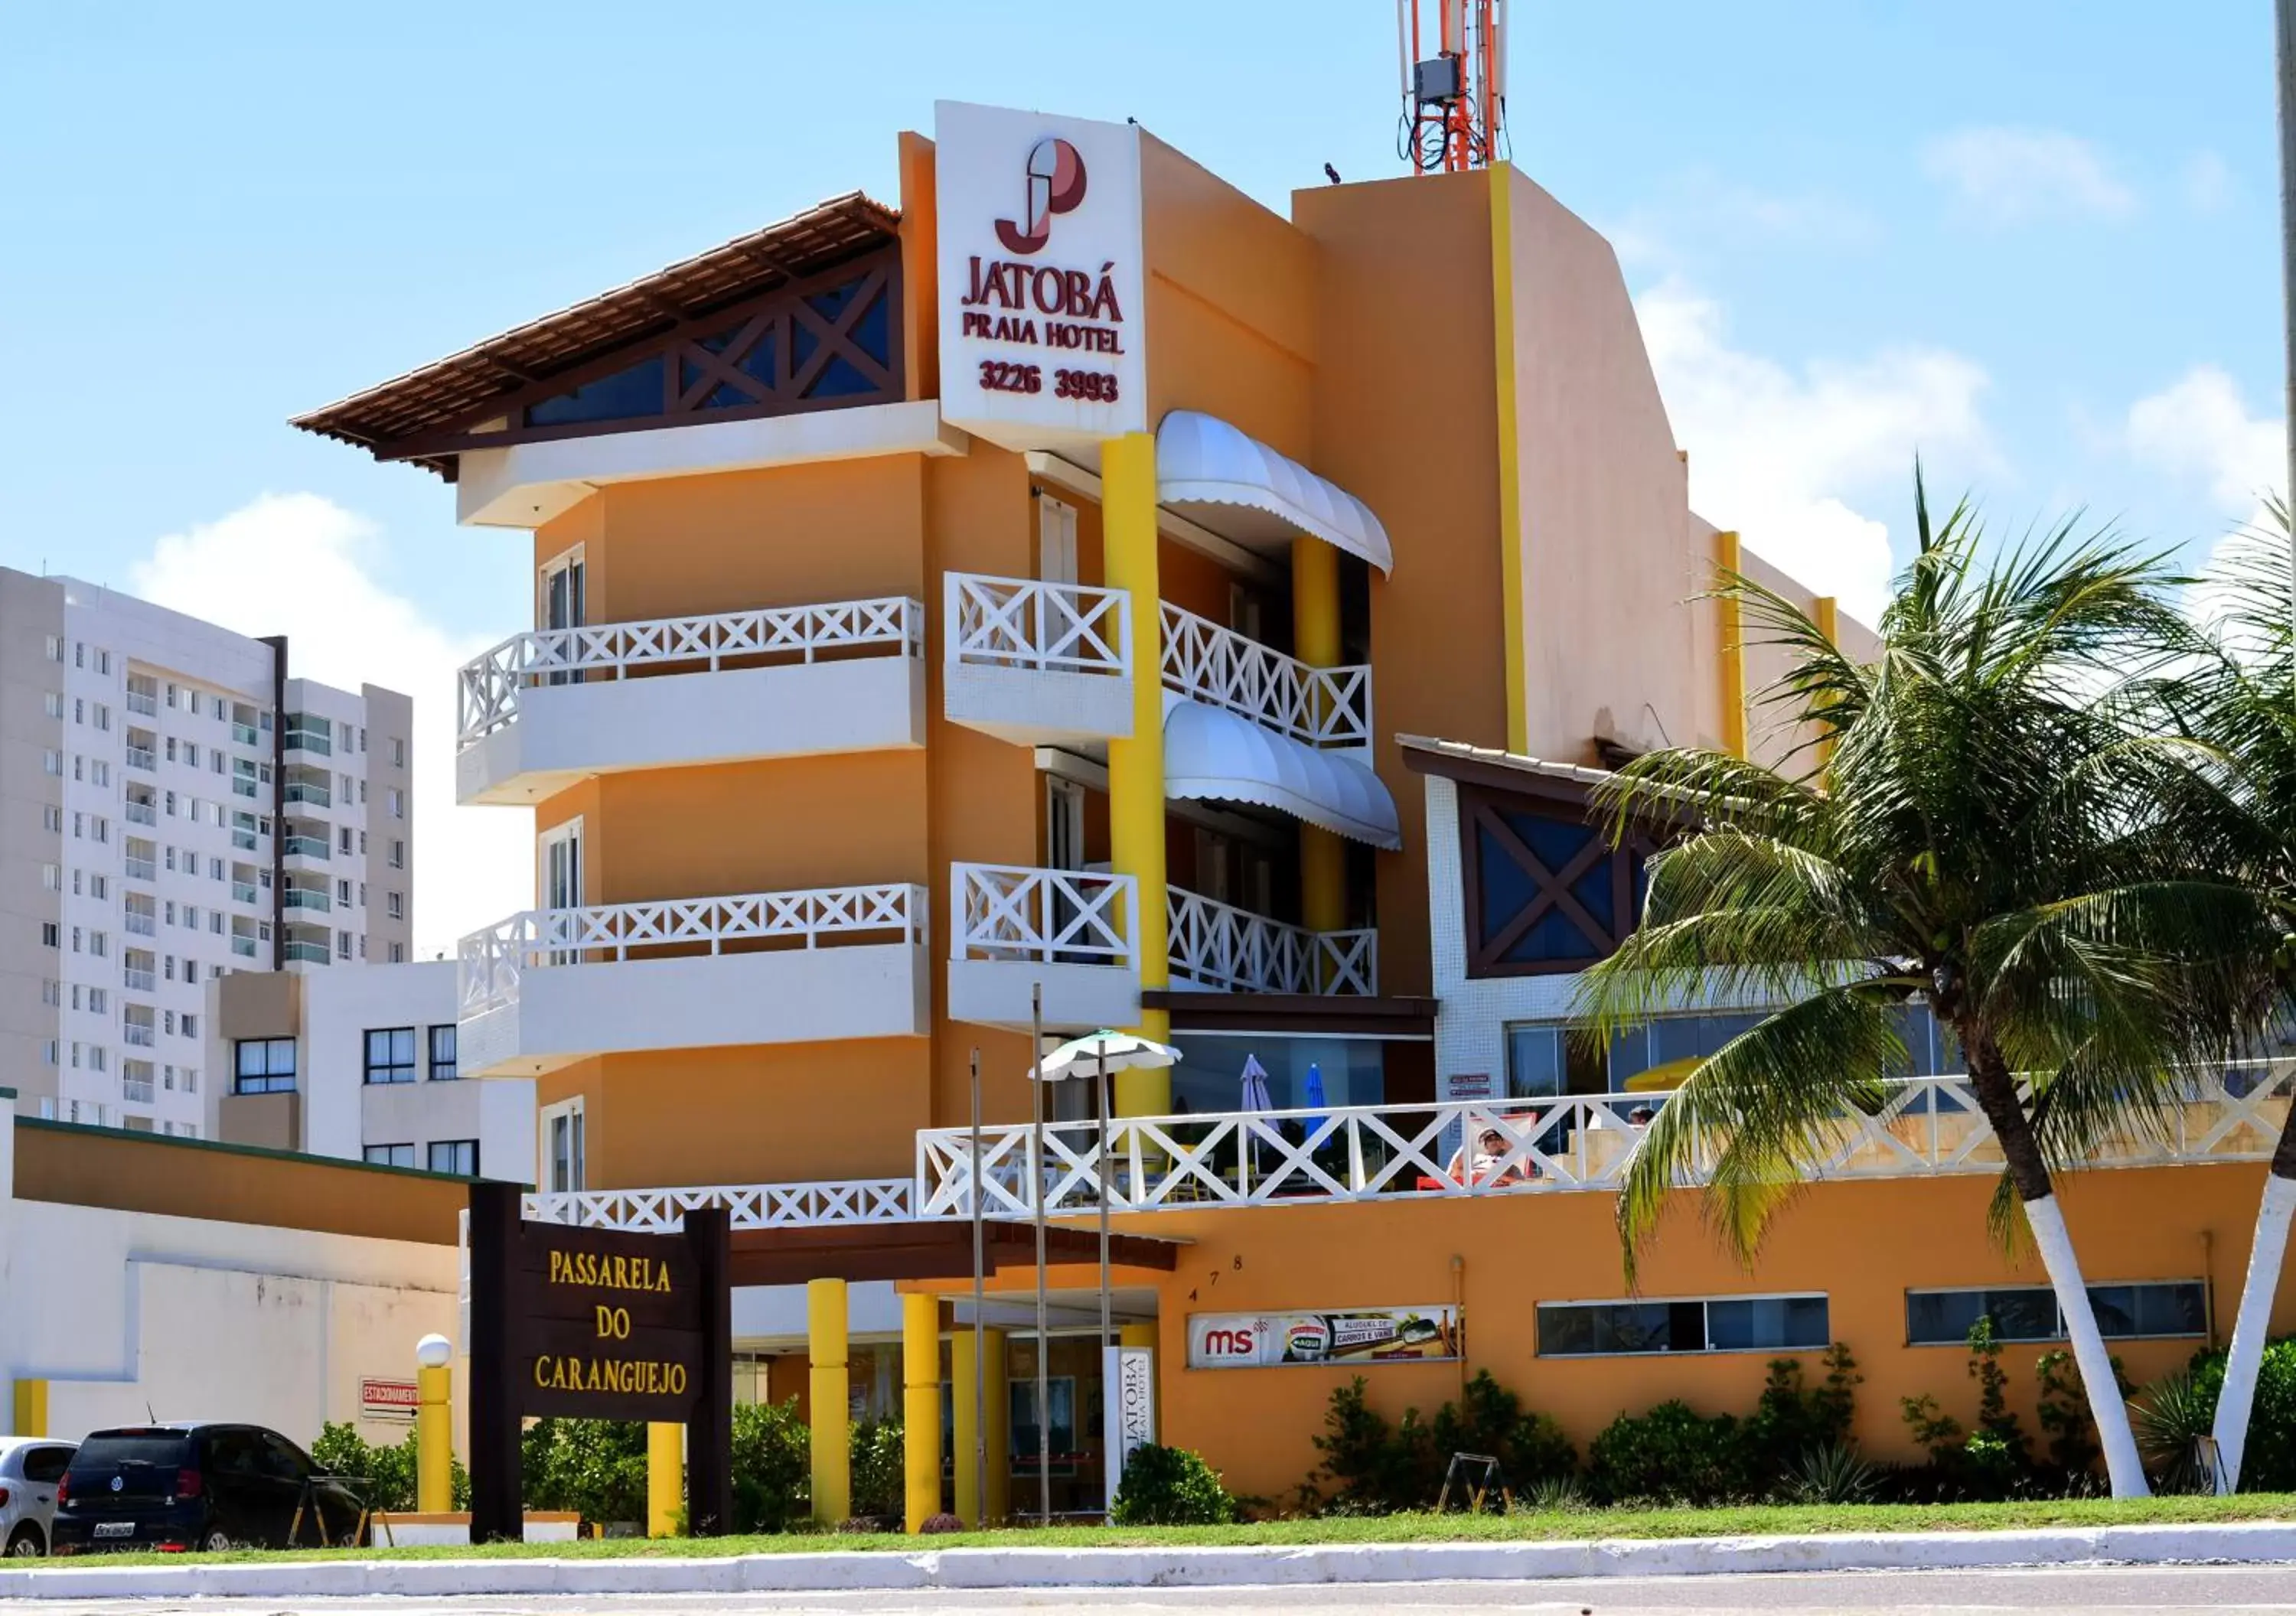 Property Building in Jatobá Praia Hotel